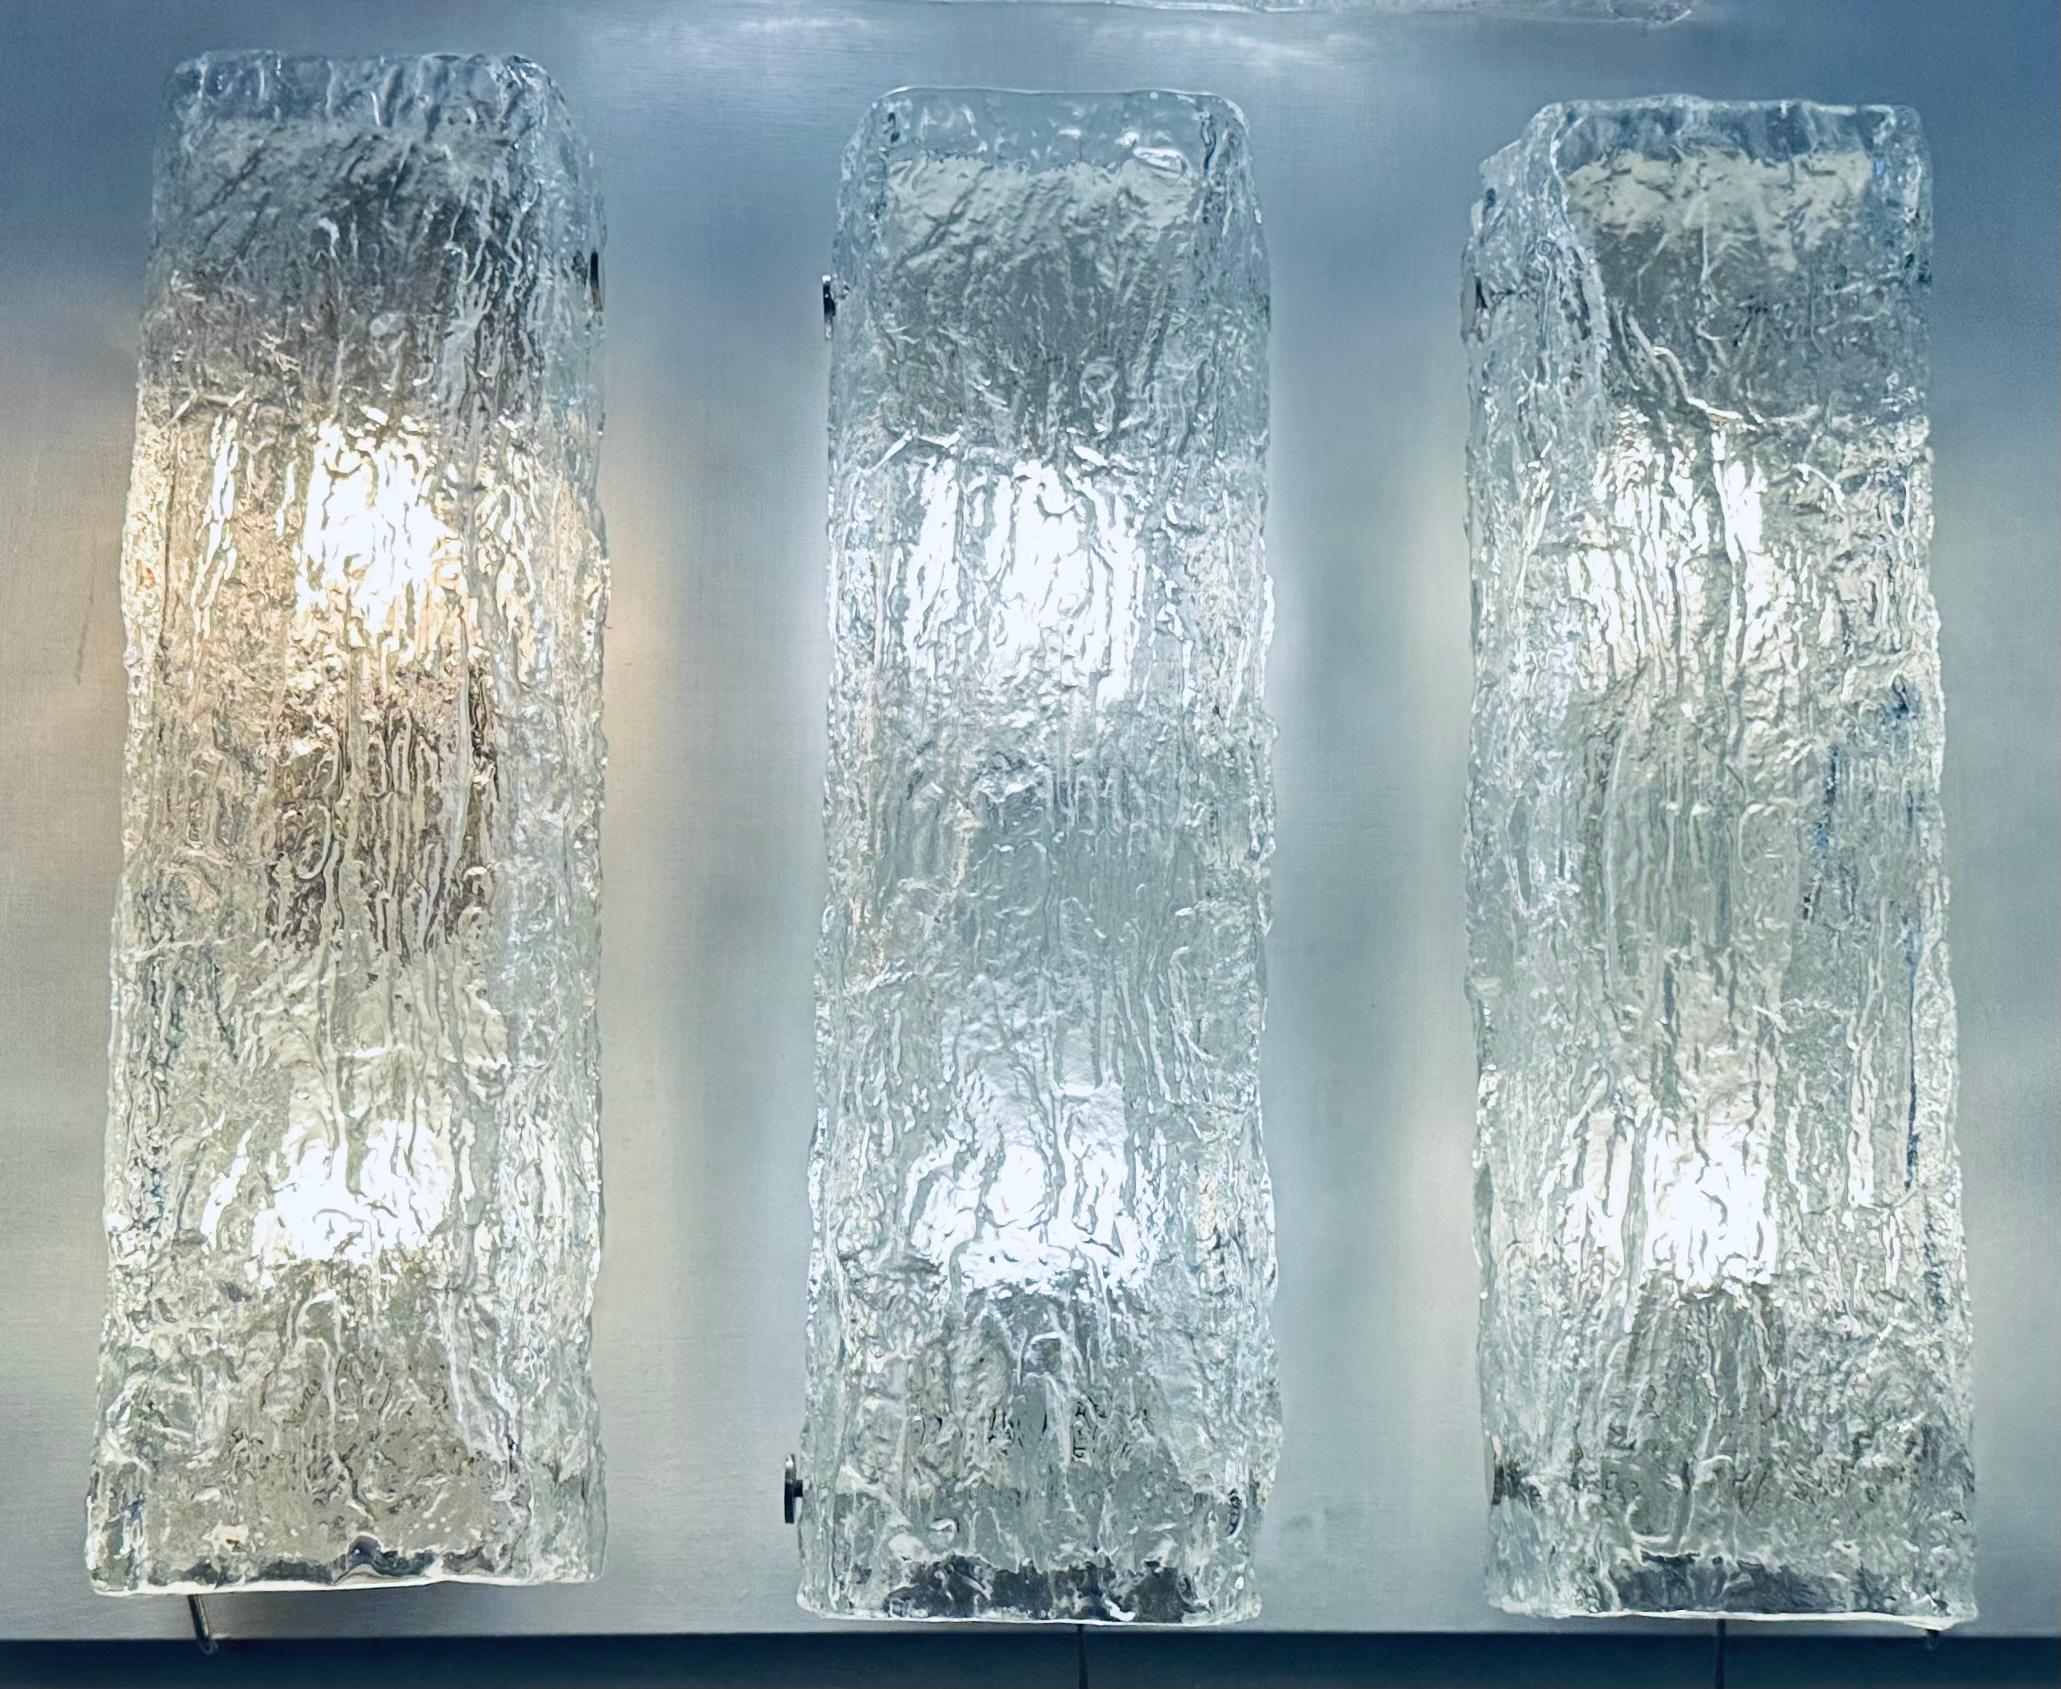 Ein Satz von 3 (einzeln bepreisten) Wandleuchtern oder Wandleuchten mit Eisglasstruktur aus den 1970er Jahren, hergestellt von dem gehobenen deutschen Leuchtenhersteller Kaiser Leuchten. Das rechteckige, dicke, strukturierte Glas wird auf einen weiß